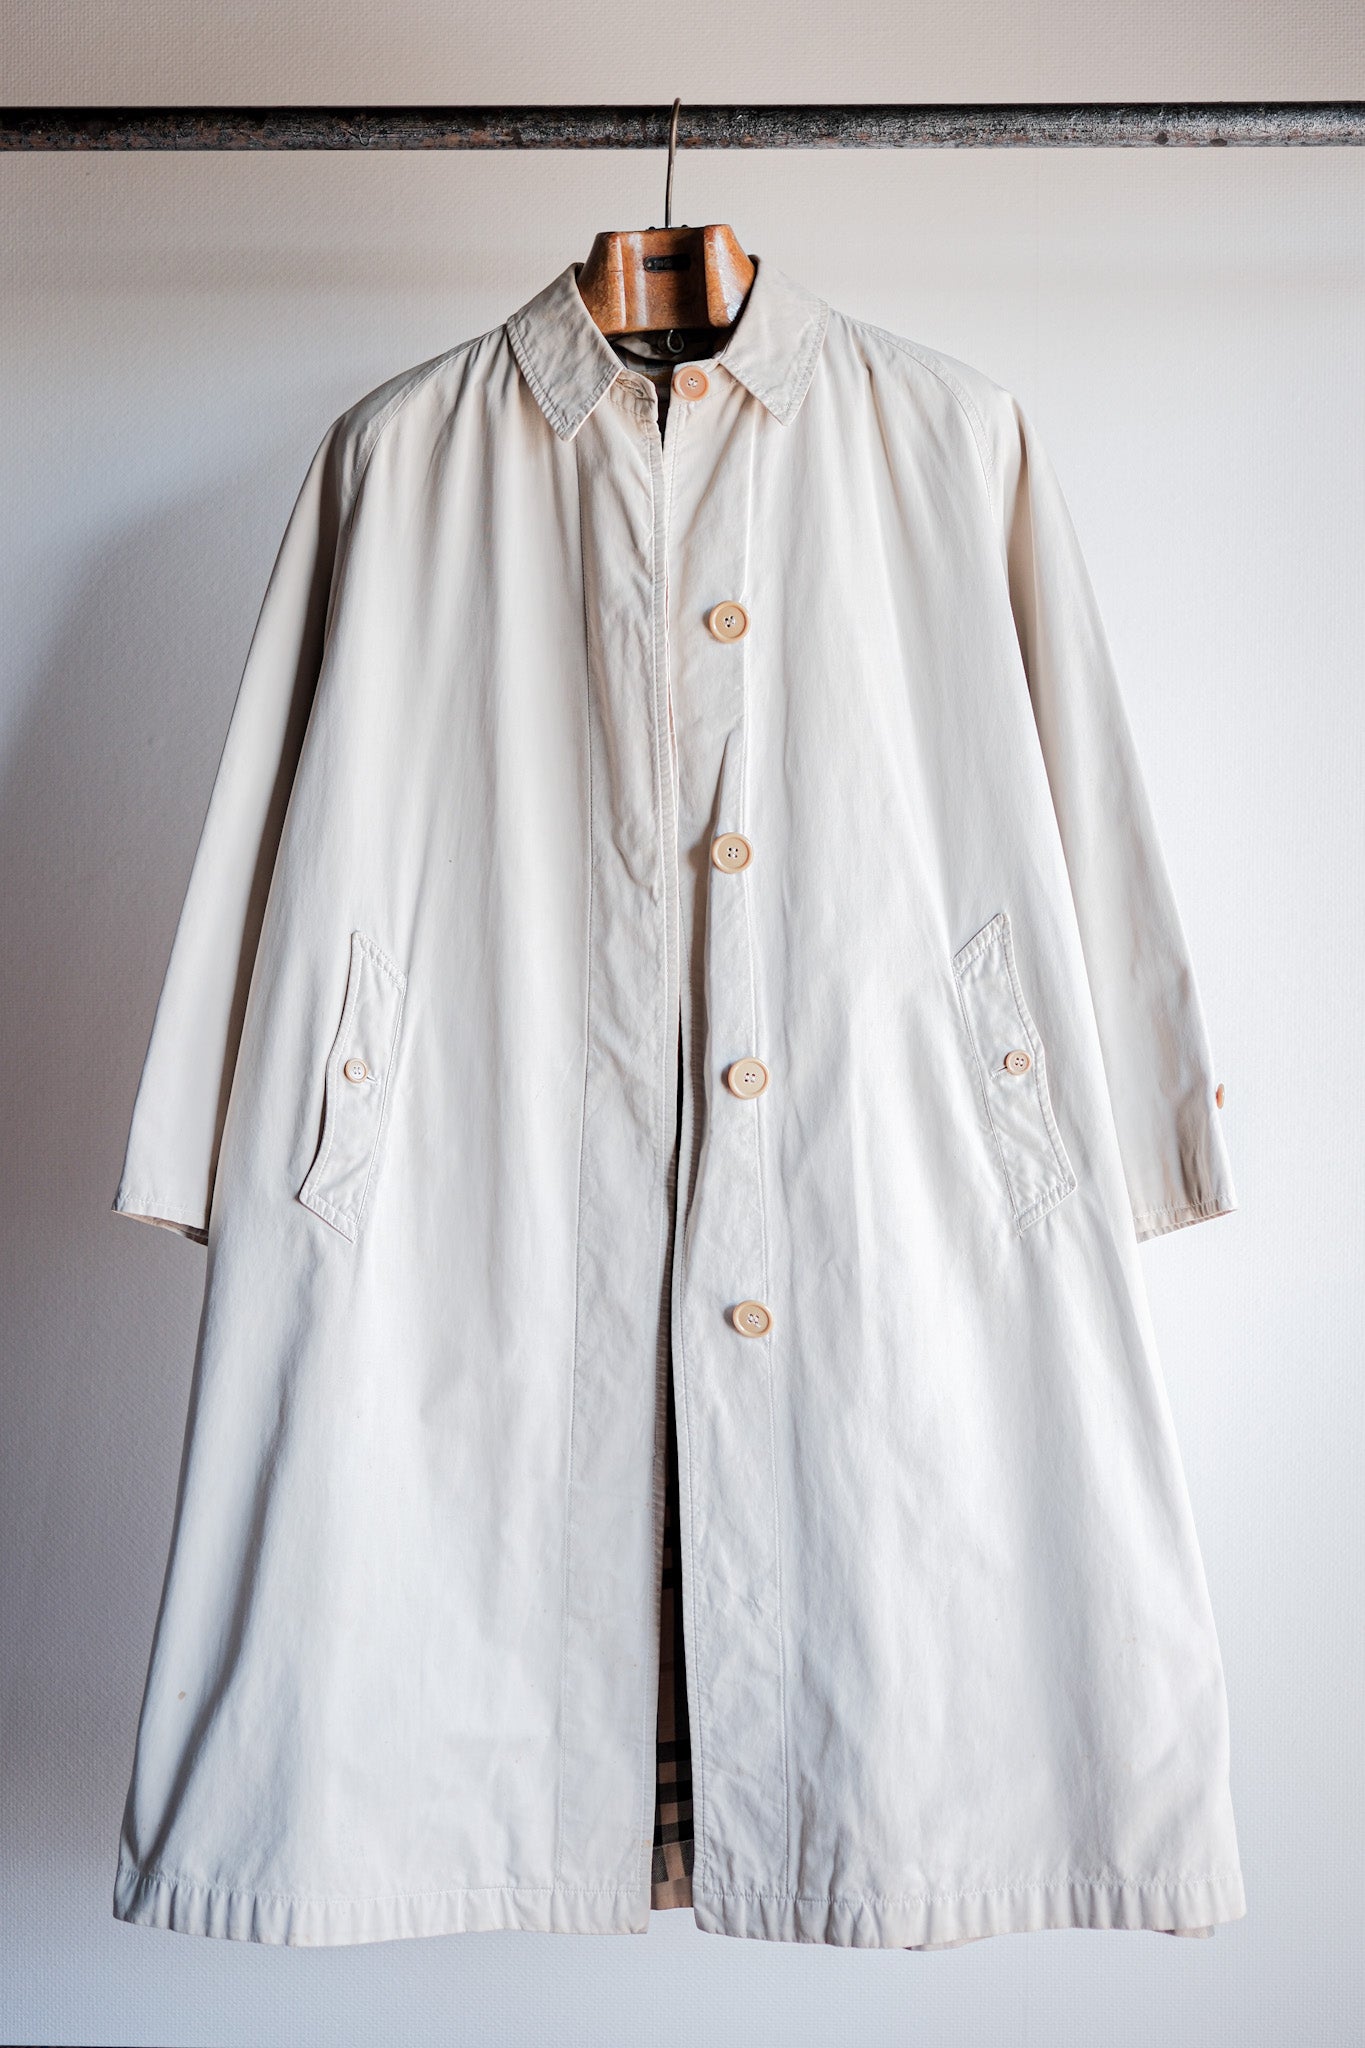 [~50 年代] 復古 Burberrys 單件插肩袖 Balmacaan 外套 C100 女士“法國製造”